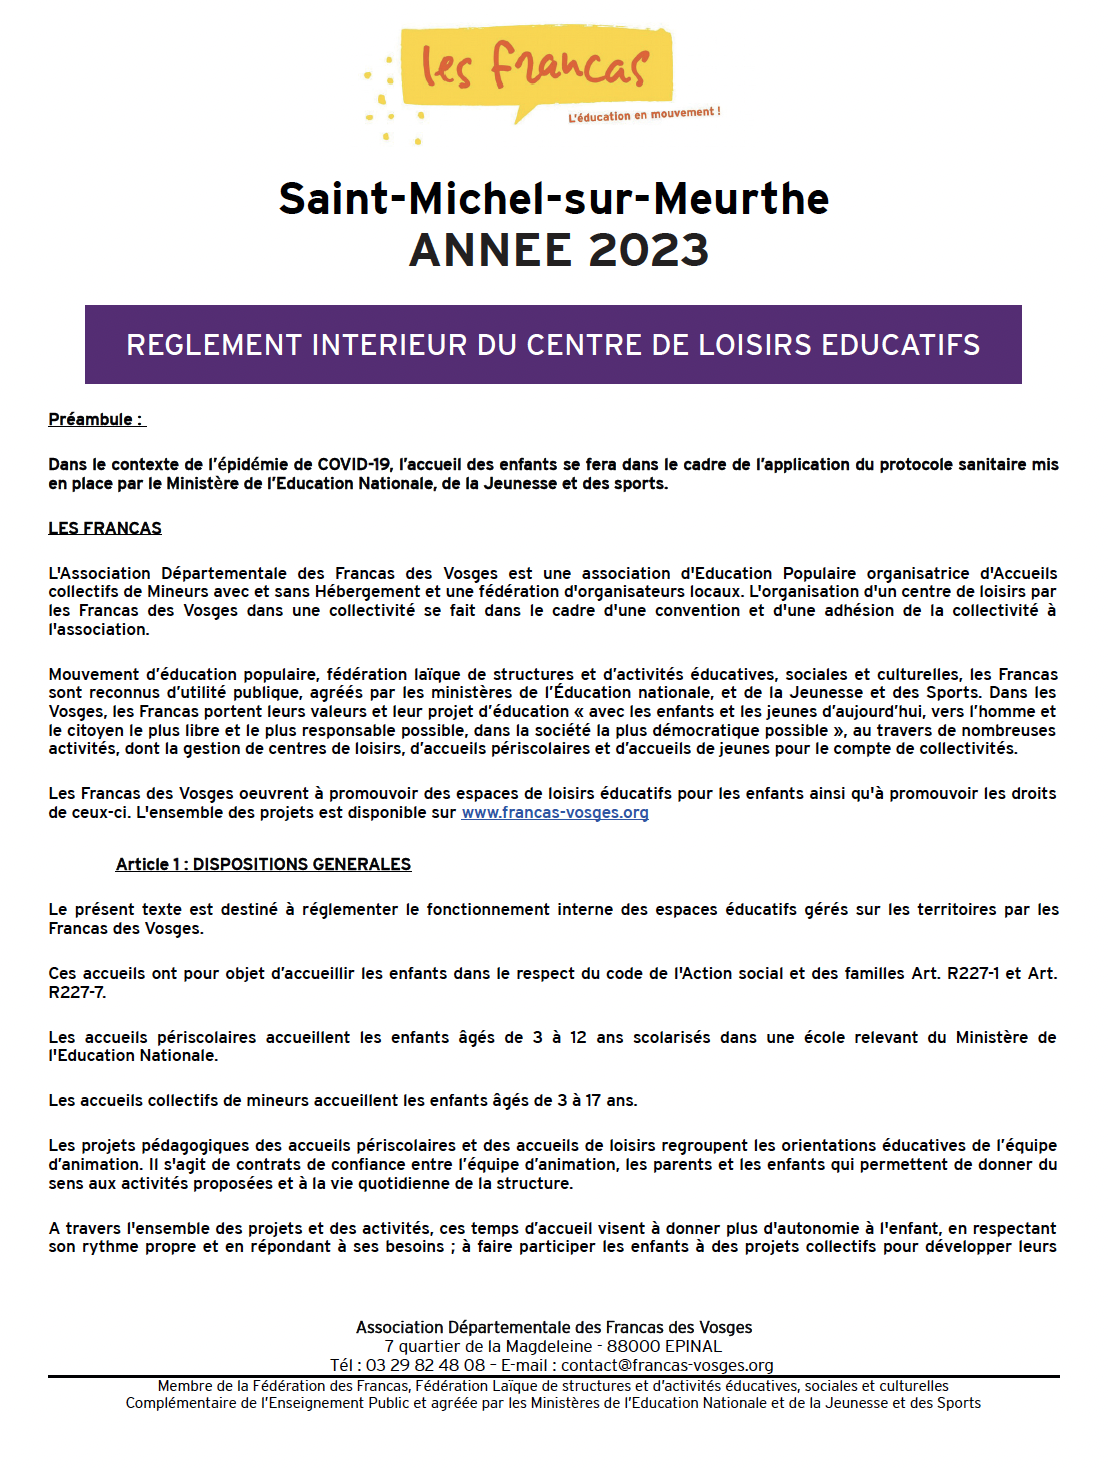 Règlement intérieur Saint-Michel-sur-Meurthe 2023